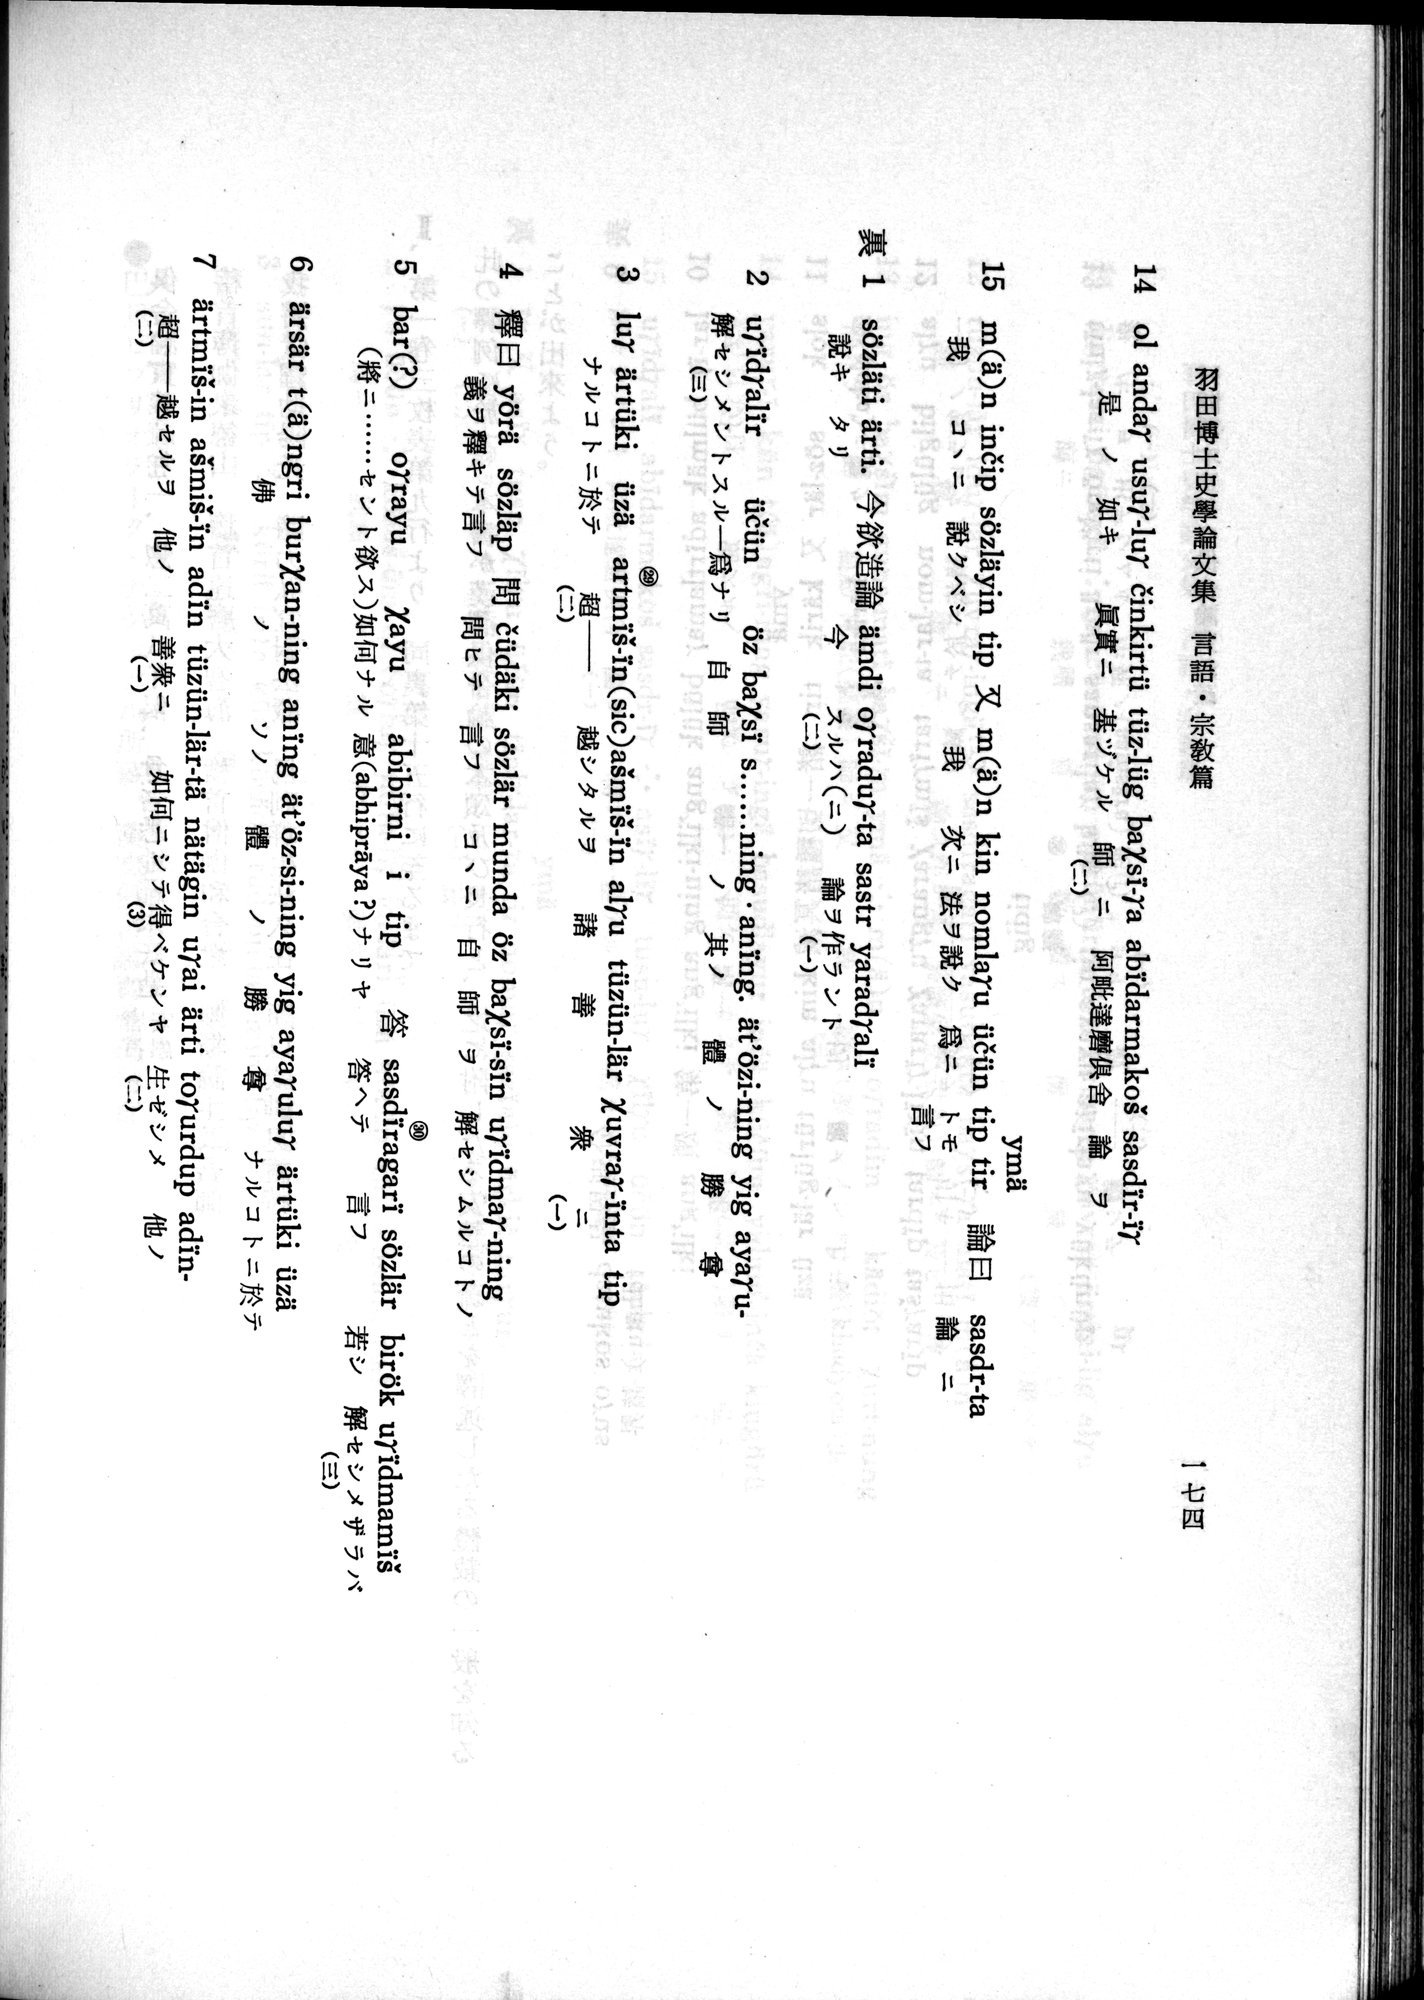 羽田博士史学論文集 : vol.2 / Page 236 (Grayscale High Resolution Image)